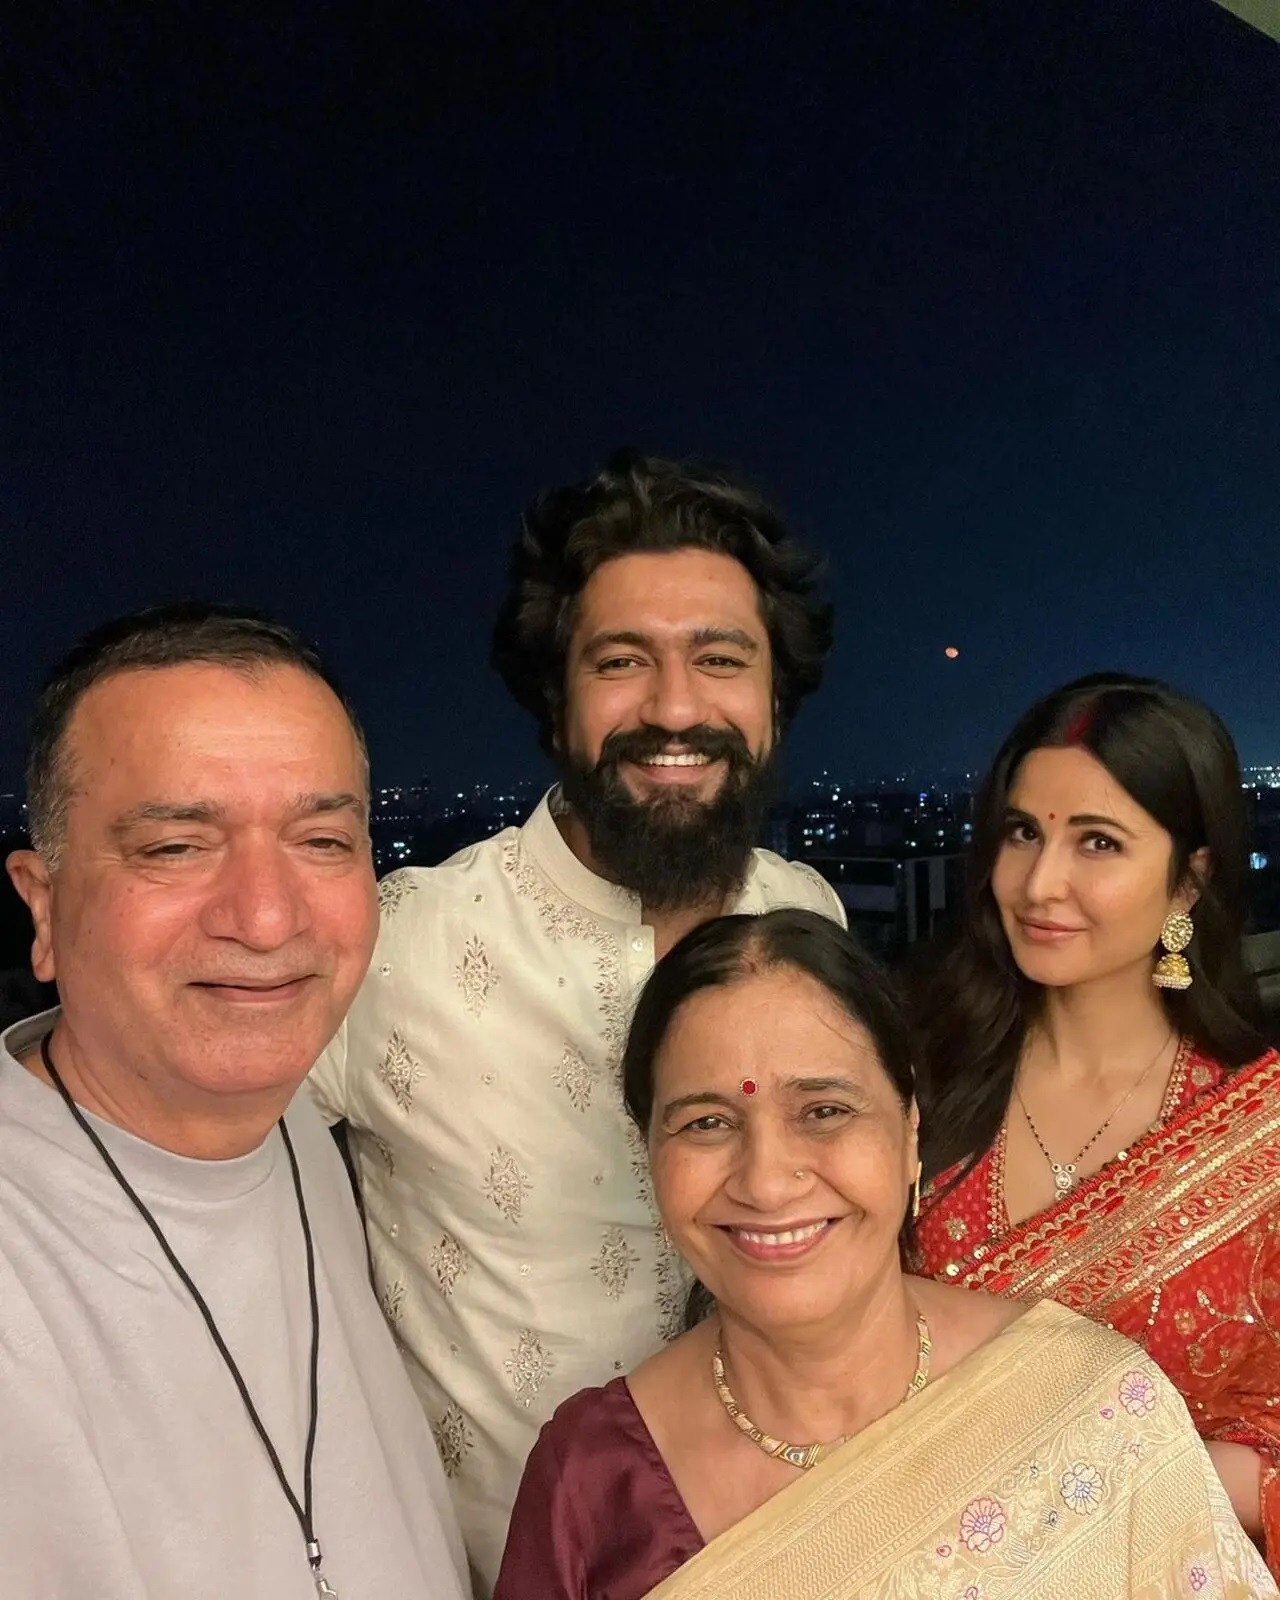 विक्की और कैटरीना अपने पूर्व माता-पिता के साथ पोज़ देते हुए, जब वे सभी अपने मुंबई स्थित घर पर त्योहार मना रहे थे.